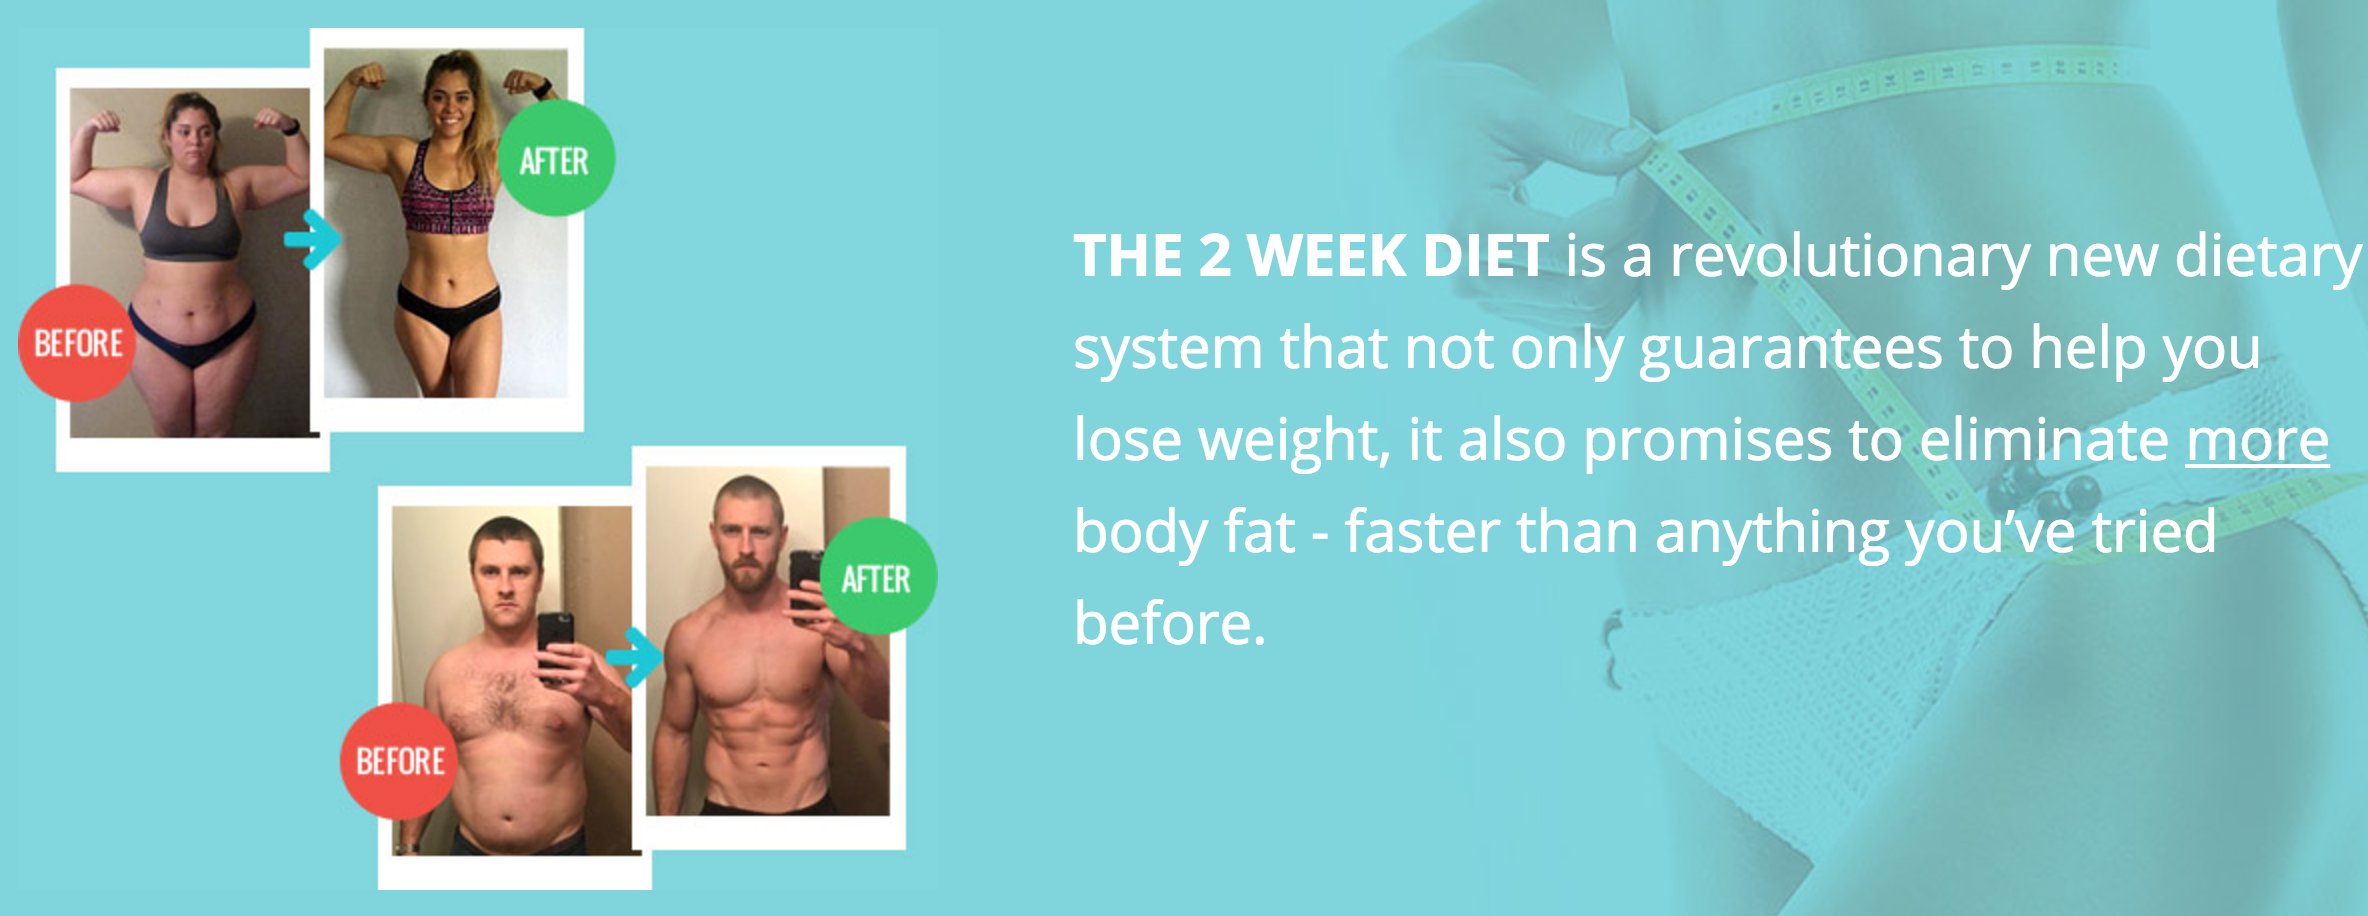 Dieta para perder 1 kg a la semana